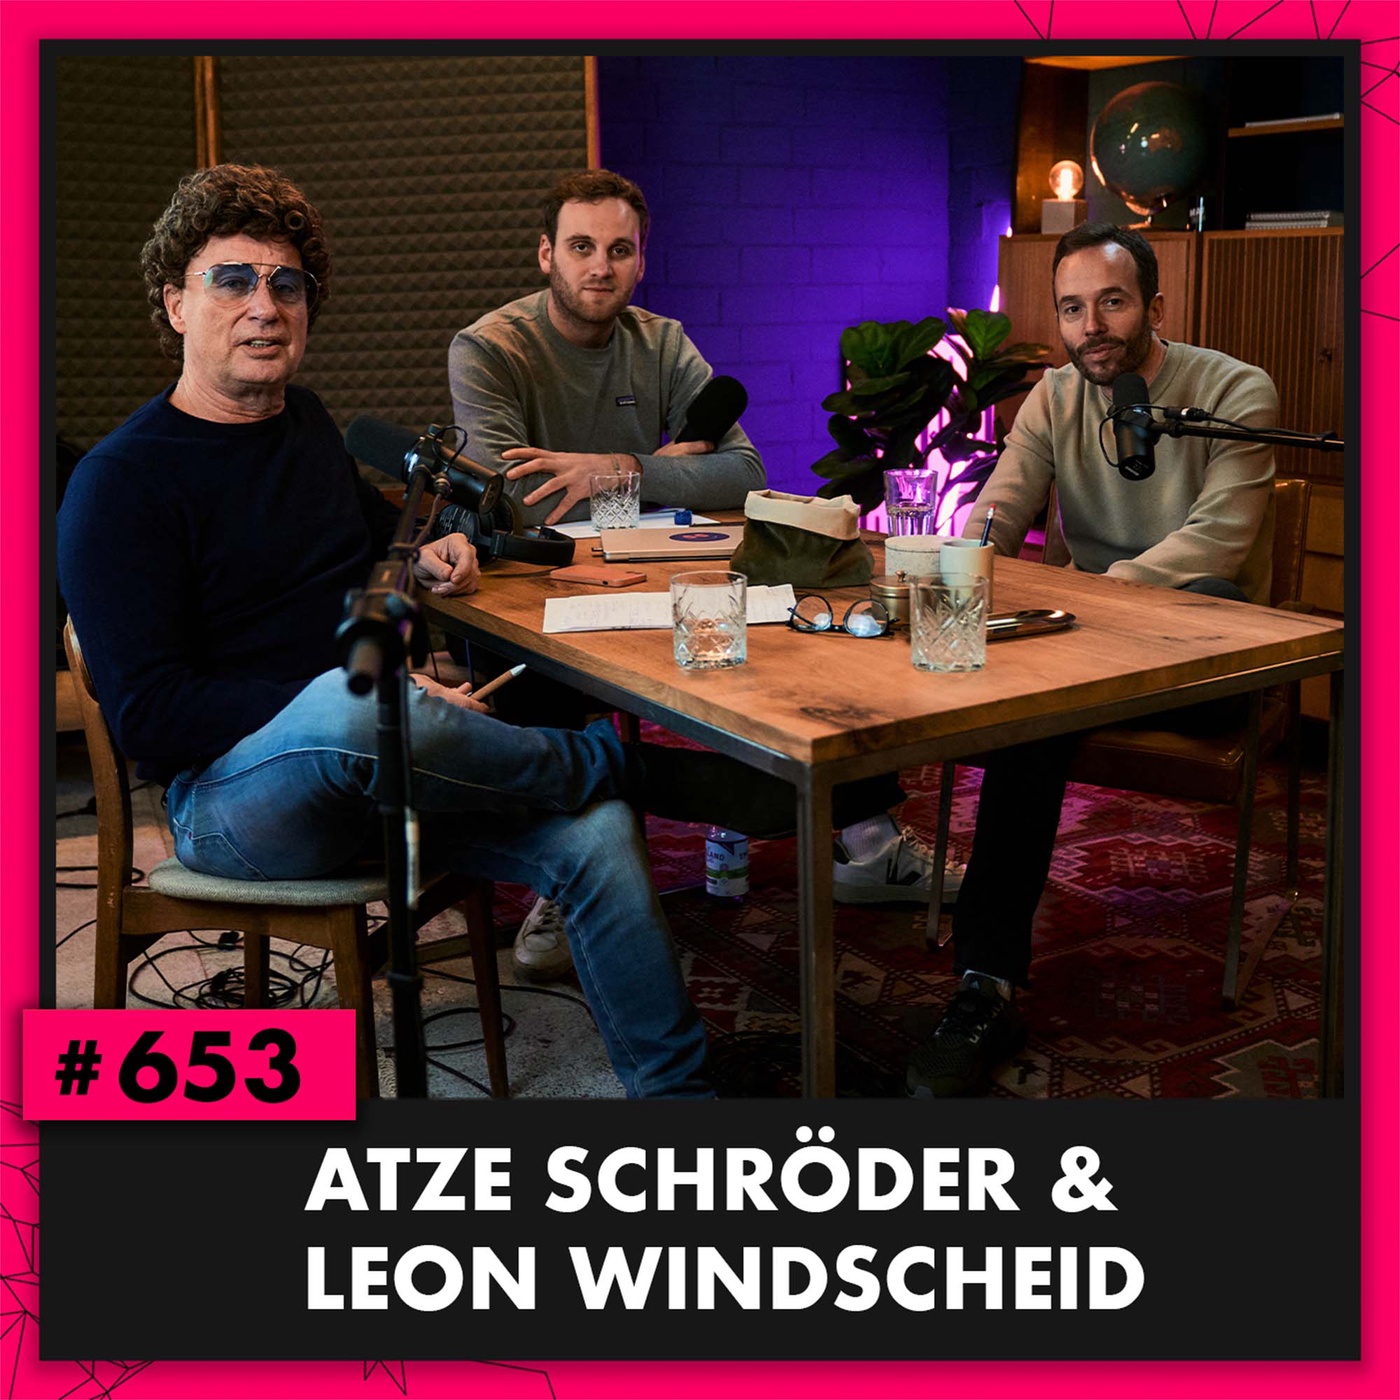 Atze Schröder & Leon Windscheid (#653)